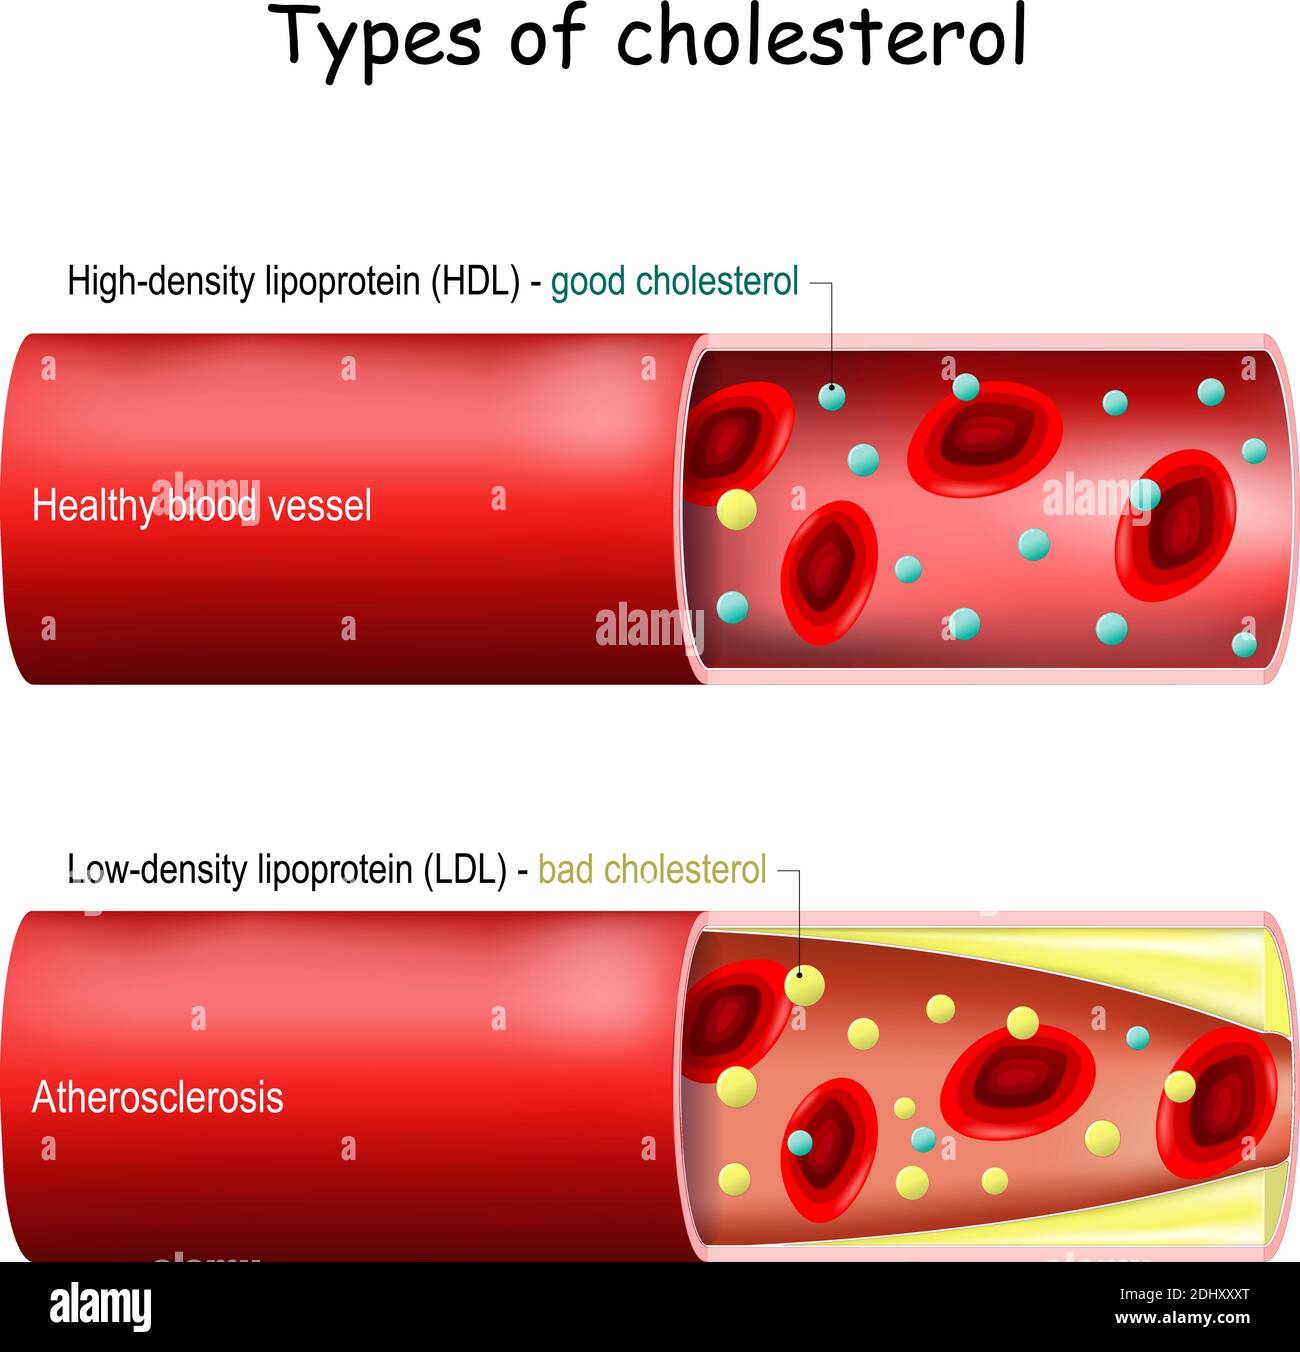 Types de cholestérol. Bon (HDL) et mauvais (LDL) cholestérol. Vaisseau sanguin sain et athérosclérose. Coupe transversale du vaisseau sanguin avec les érythrocytes Illustration de Vecteur